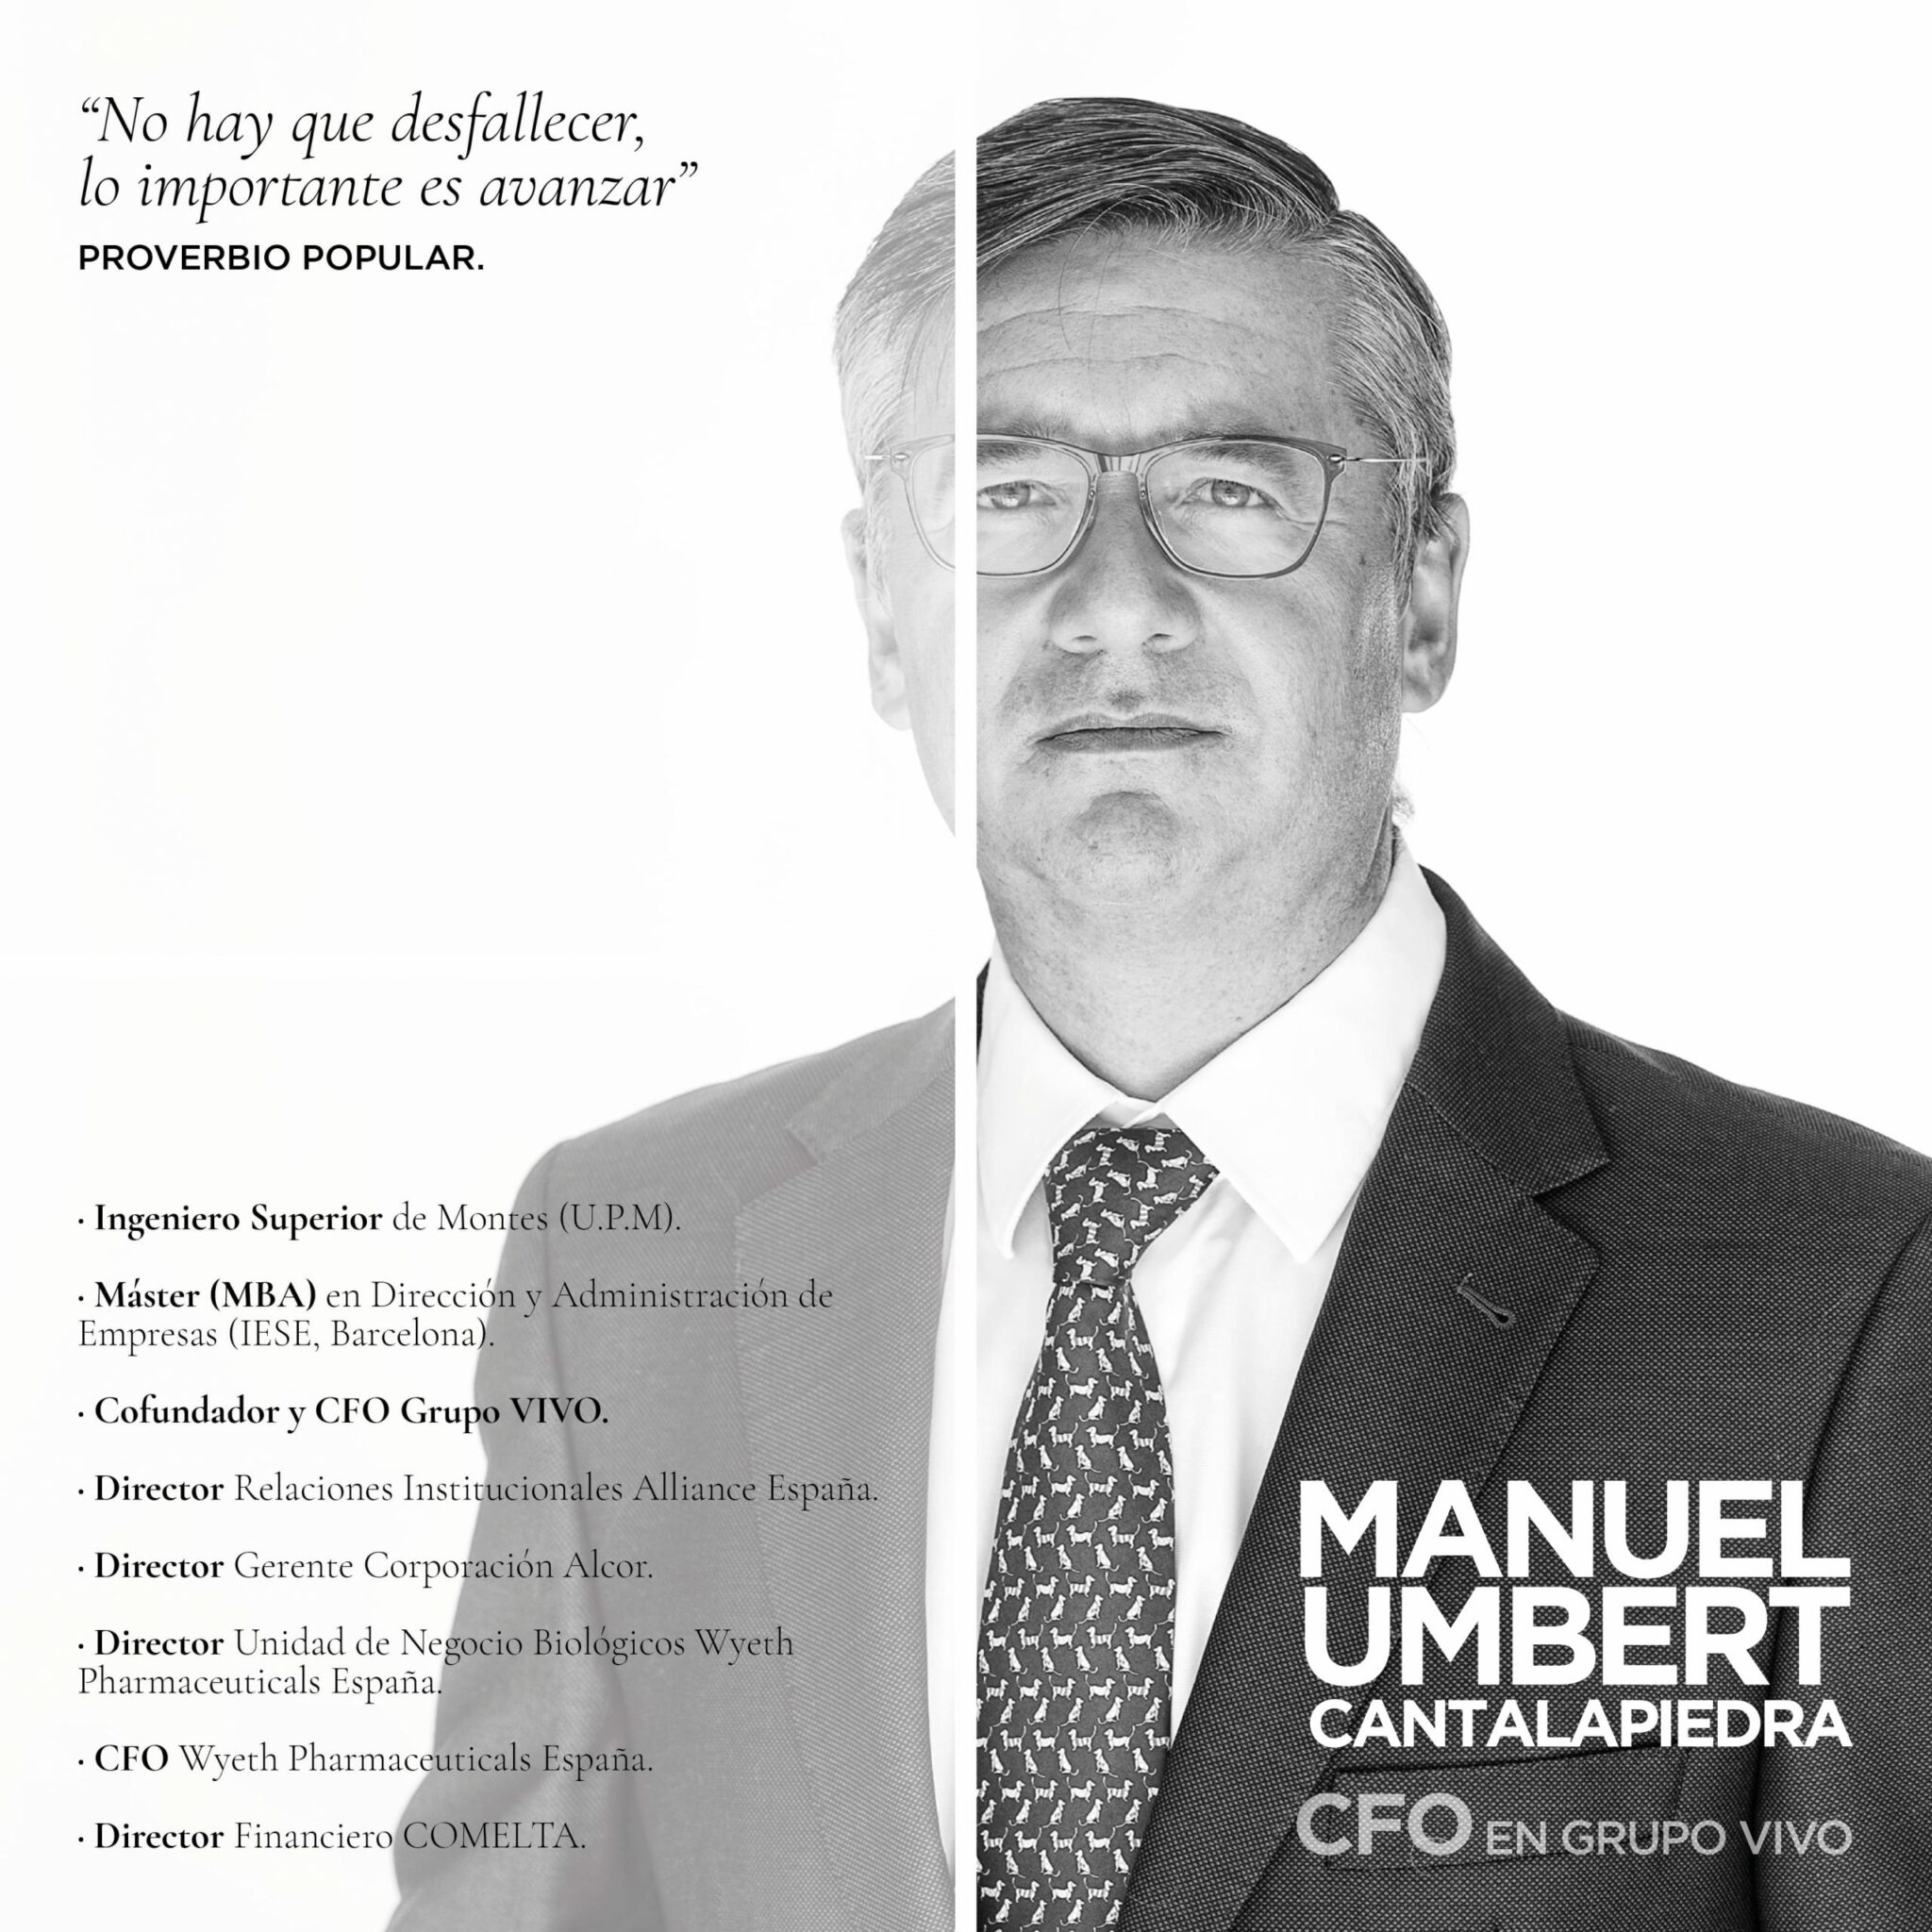 Manuel Umbert Cantalapiedra - CFO